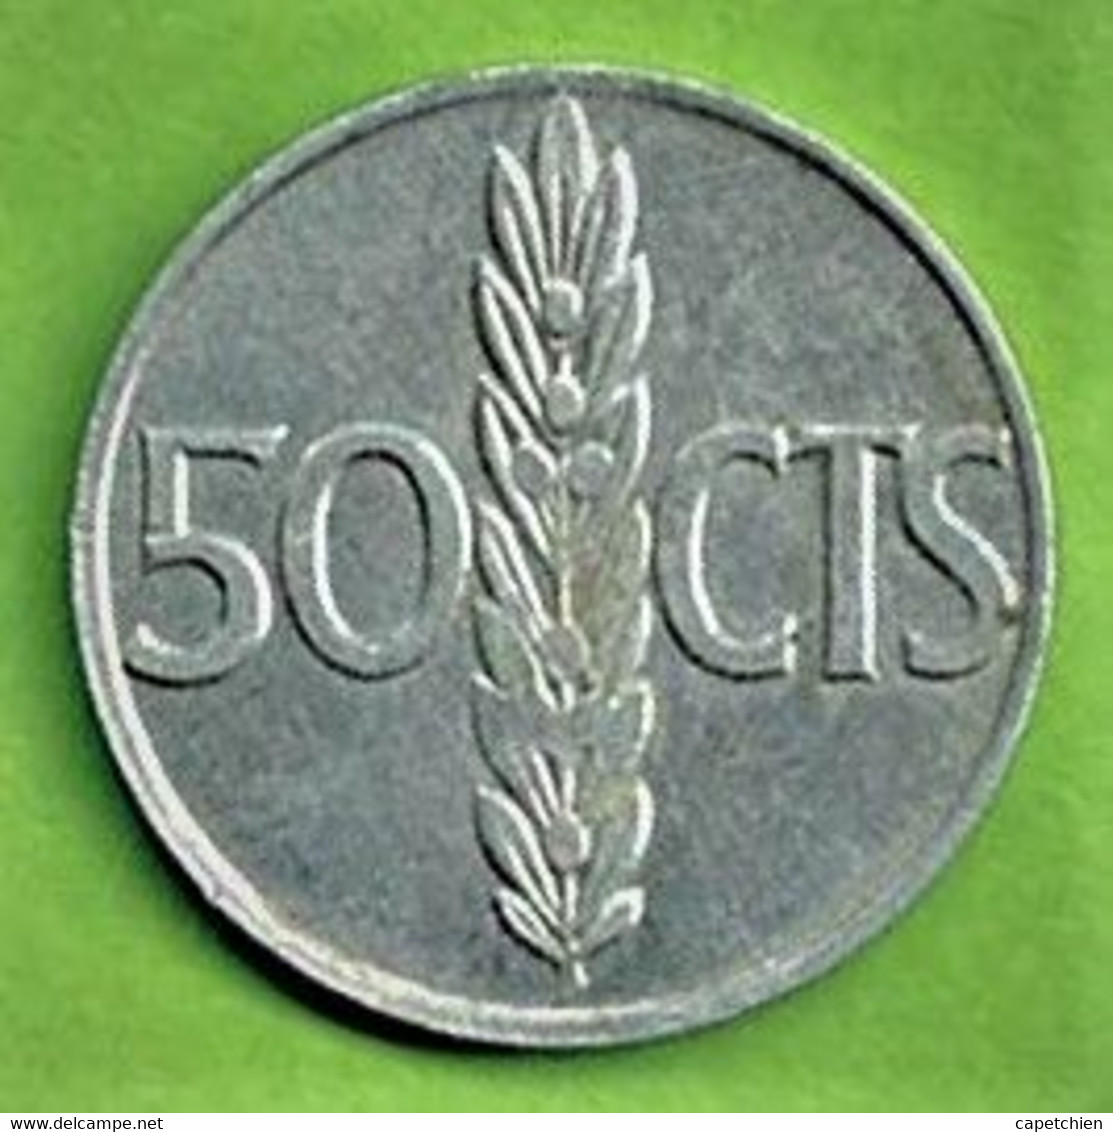 ESPAGNE / 50 CENTIMOS / 1966 / ALU / FRANCO - 50 Centimos